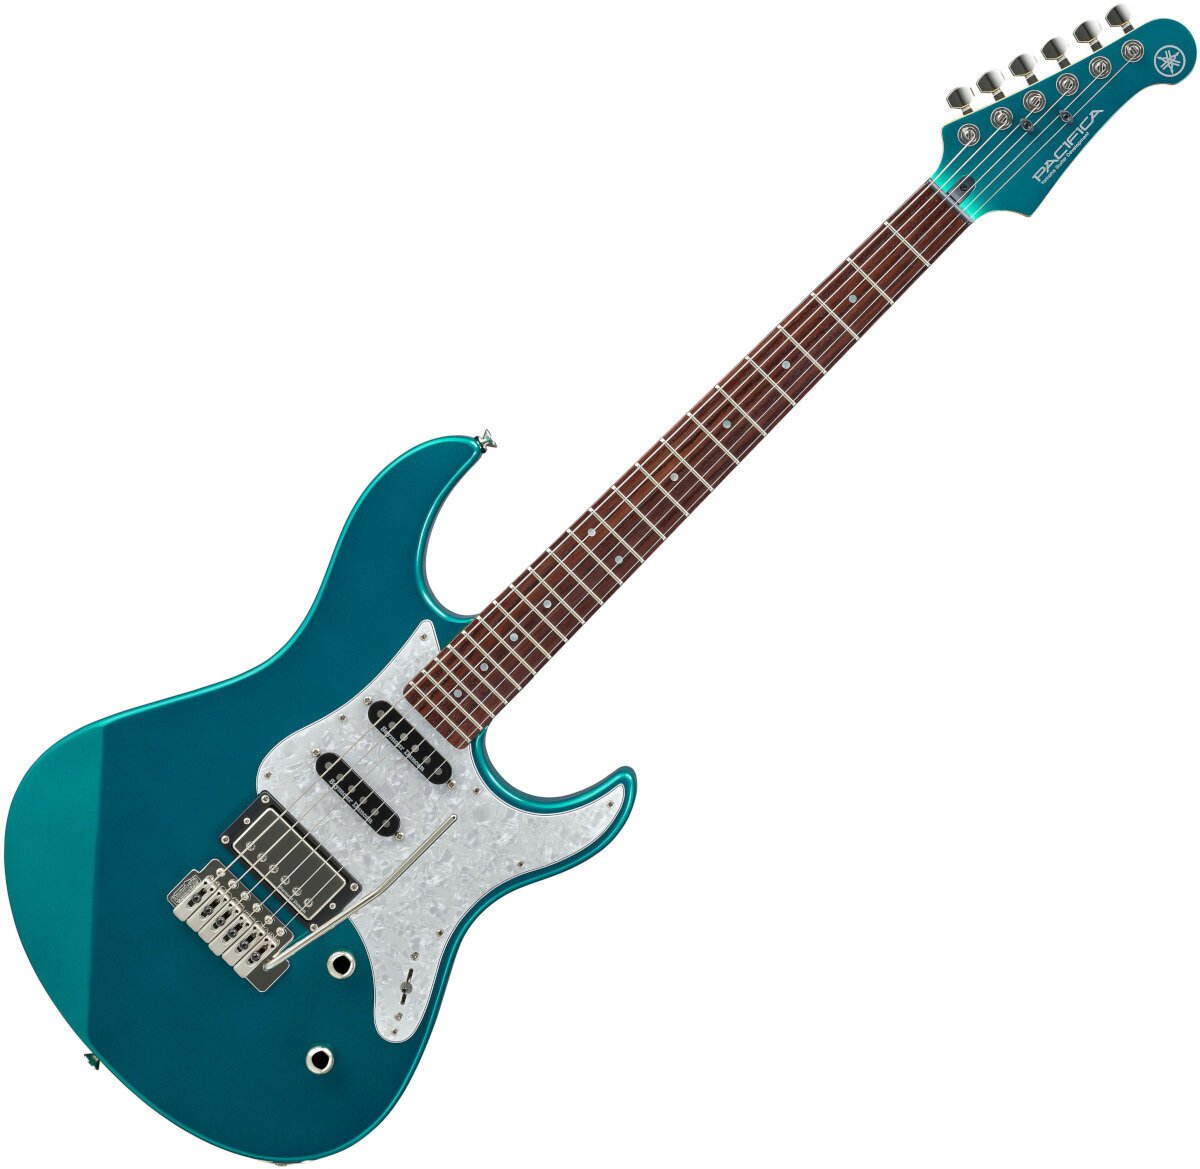 E-Gitarre Yamaha Pacifica 612 VI Grün